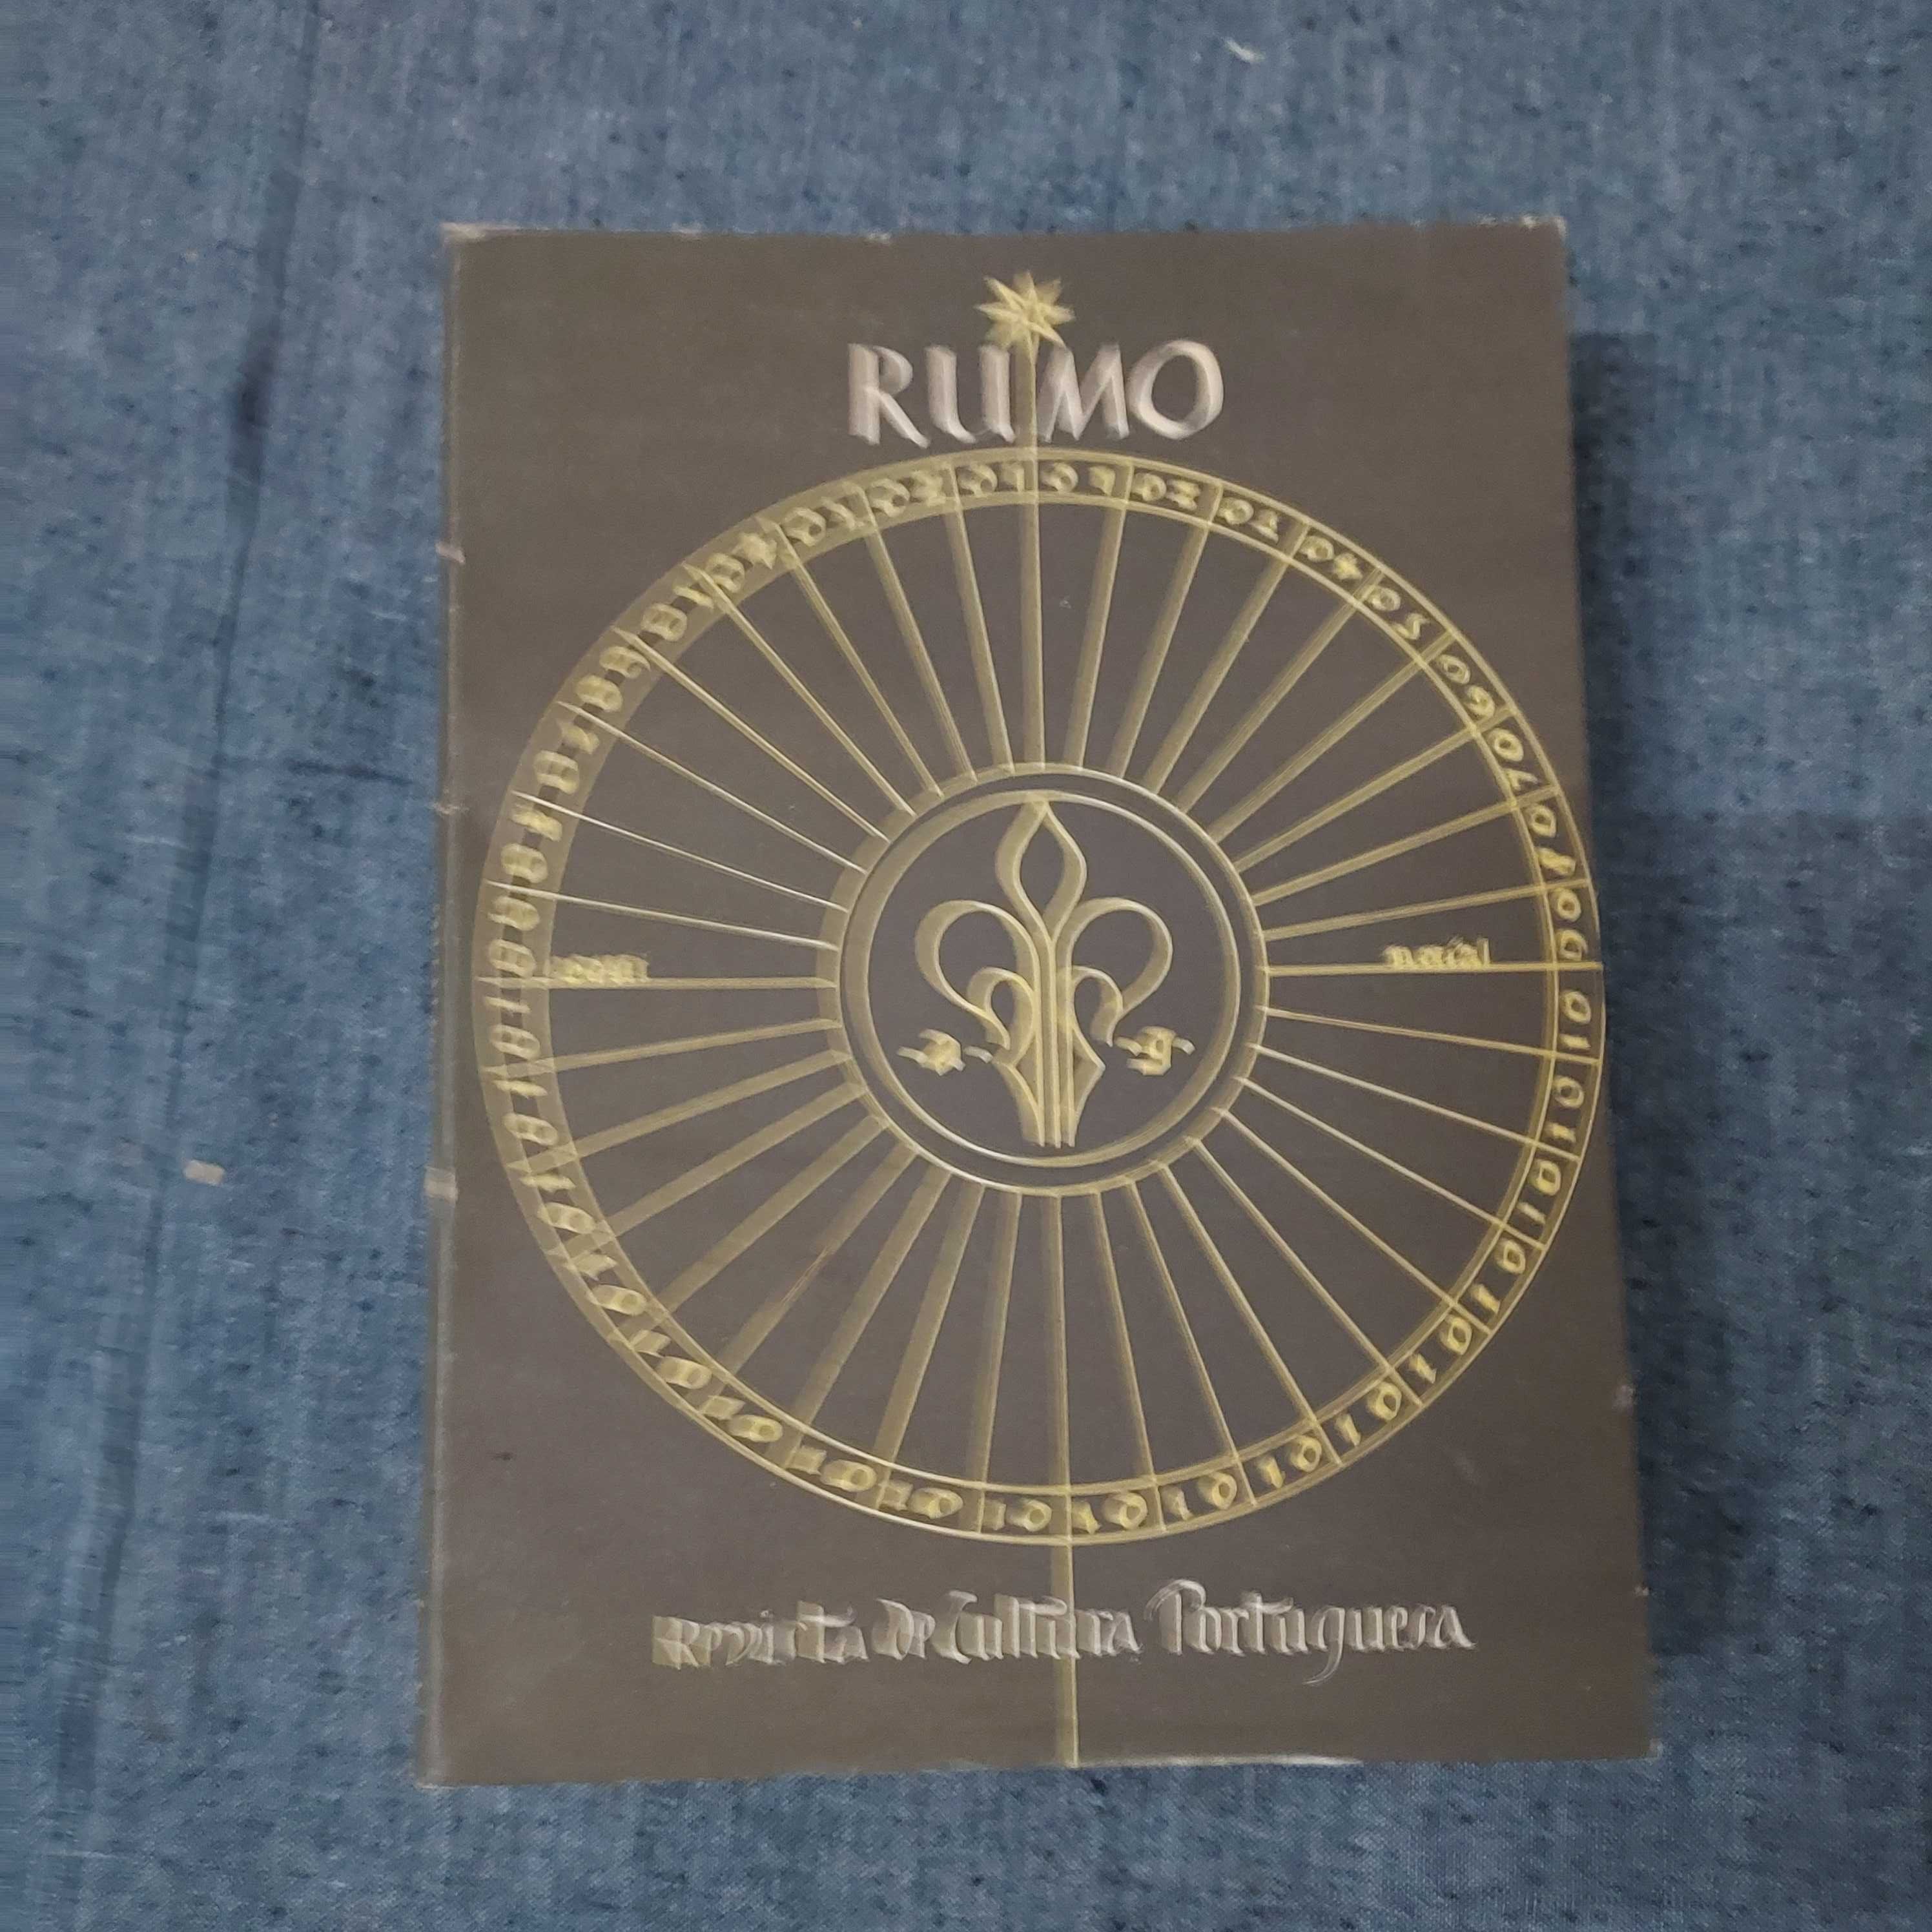 Rumo-Revista De Cultura Portuguesa-6 Números-1946 Completa